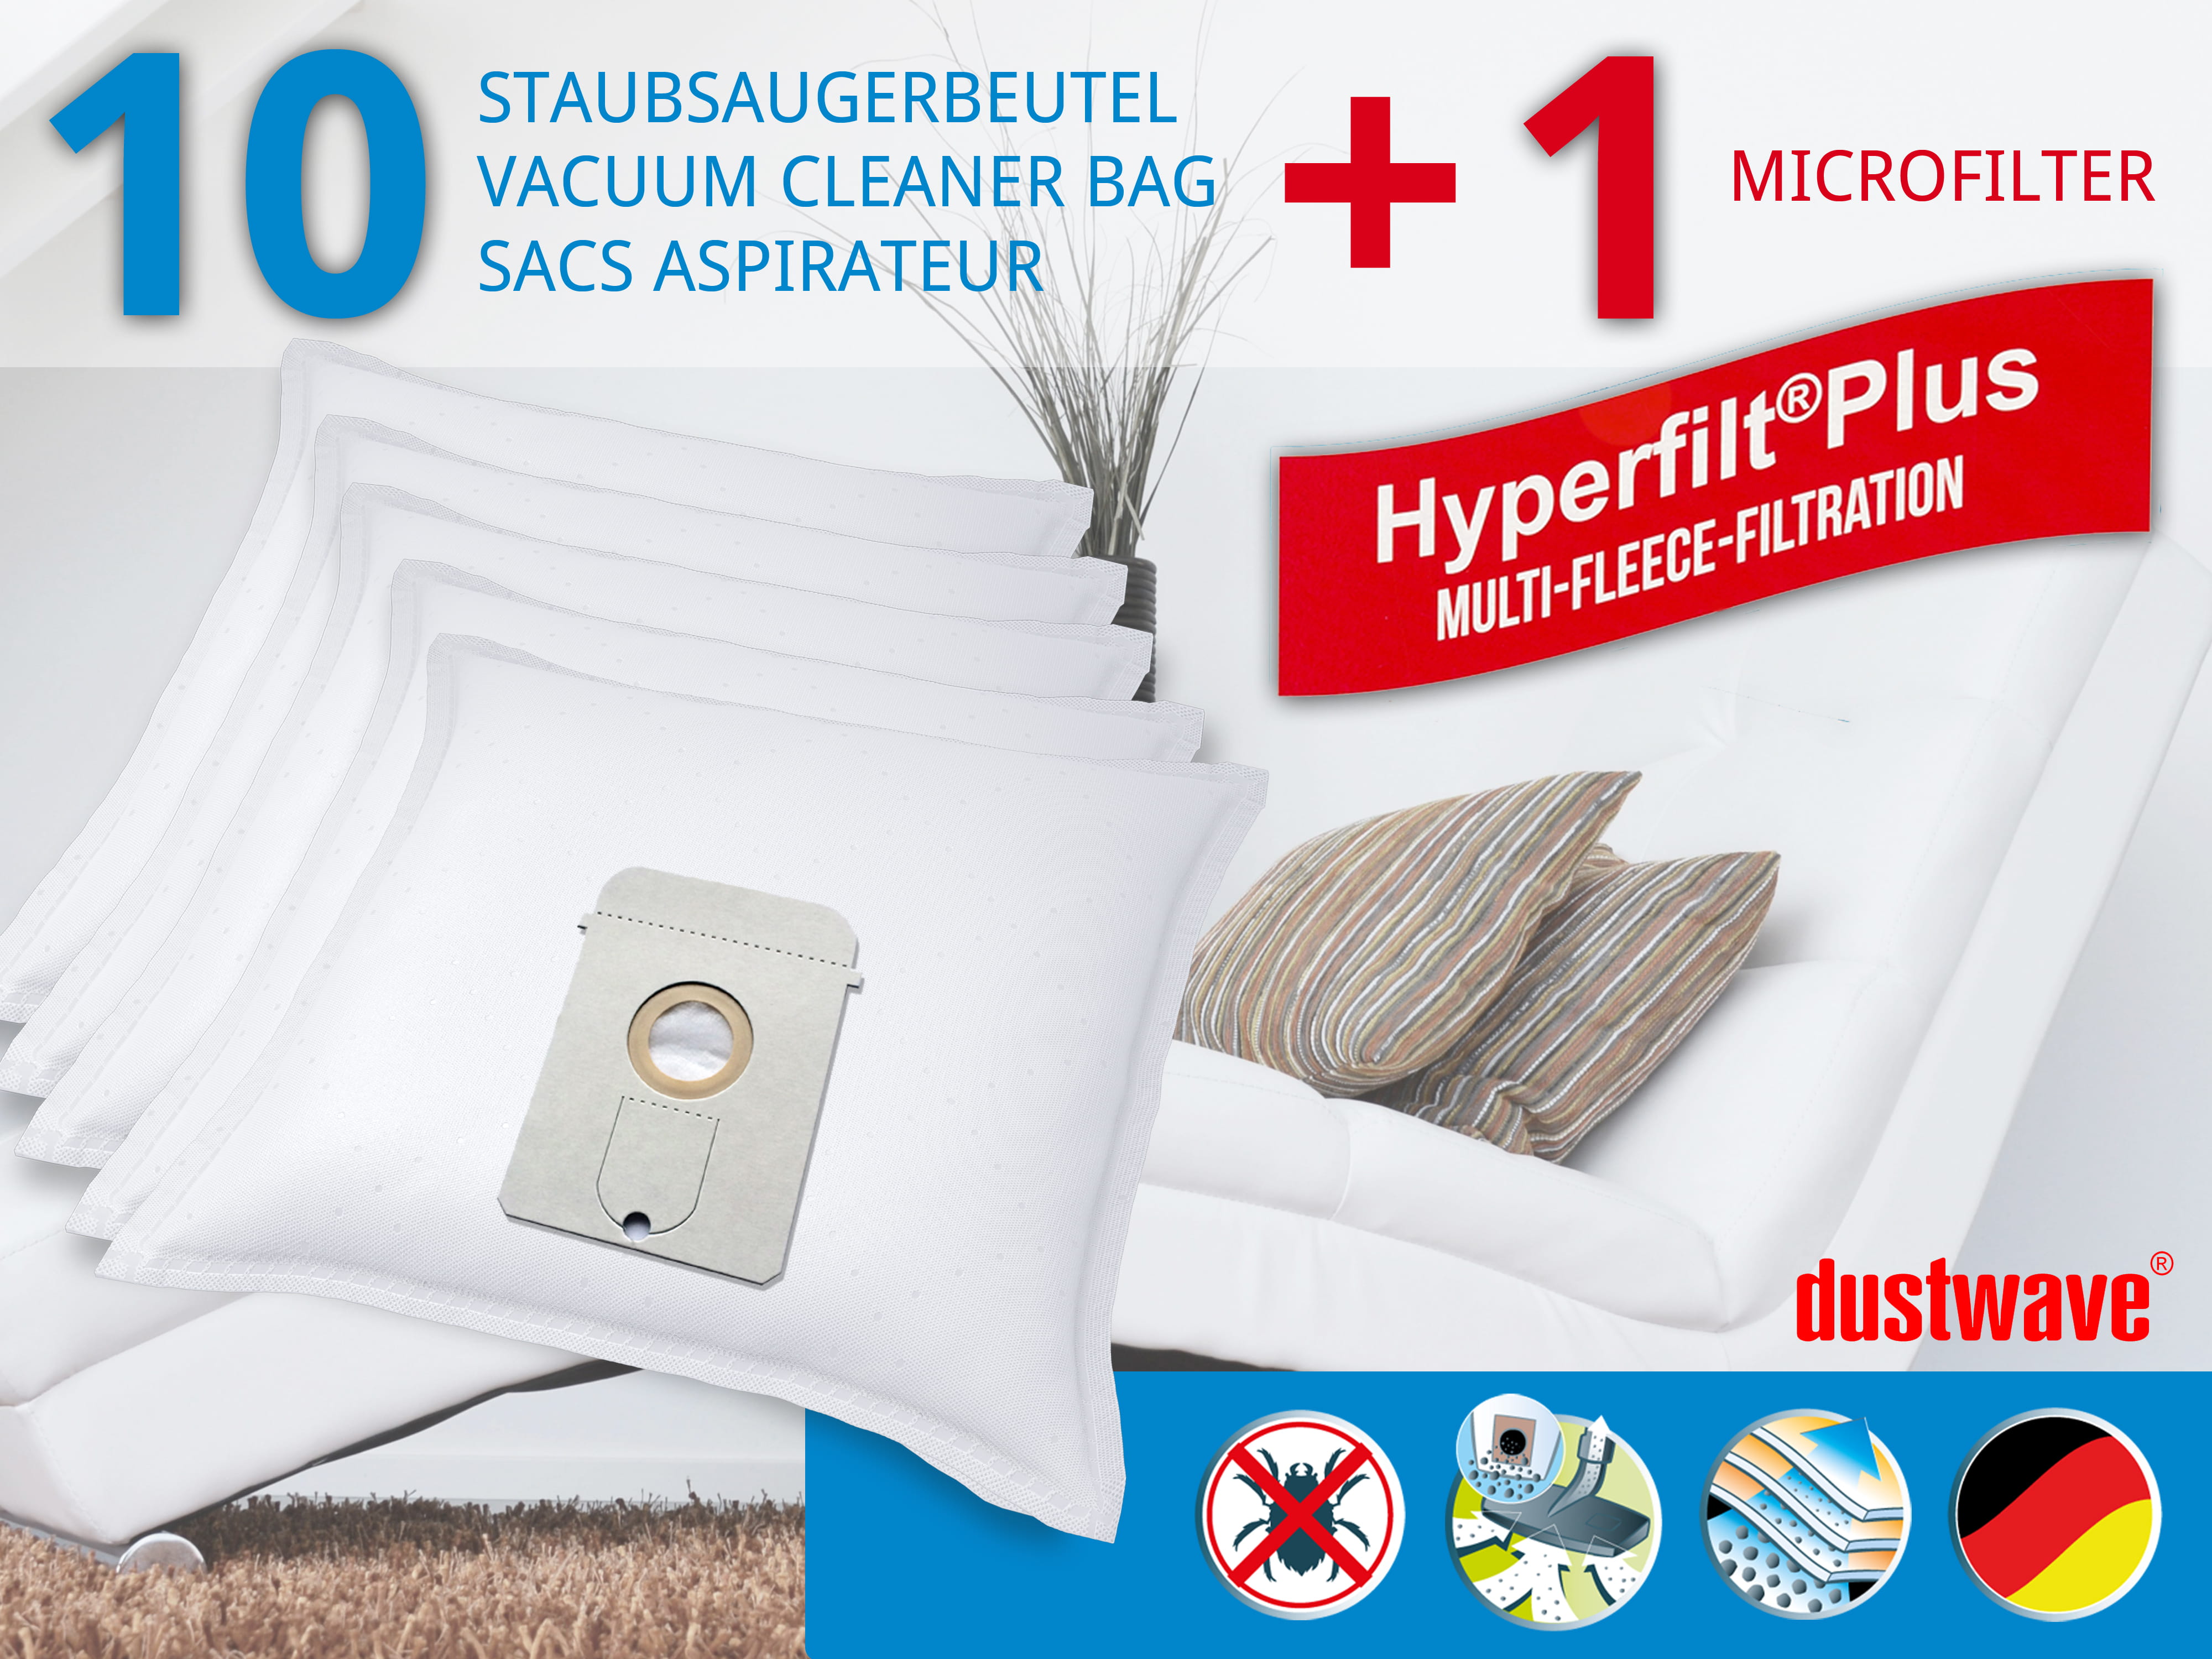 Dustwave® 10 Staubsaugerbeutel für AEG Vampyr TC Yello - hocheffizient, mehrlagiges Mikrovlies mit Hygieneverschluss - Made in Germany